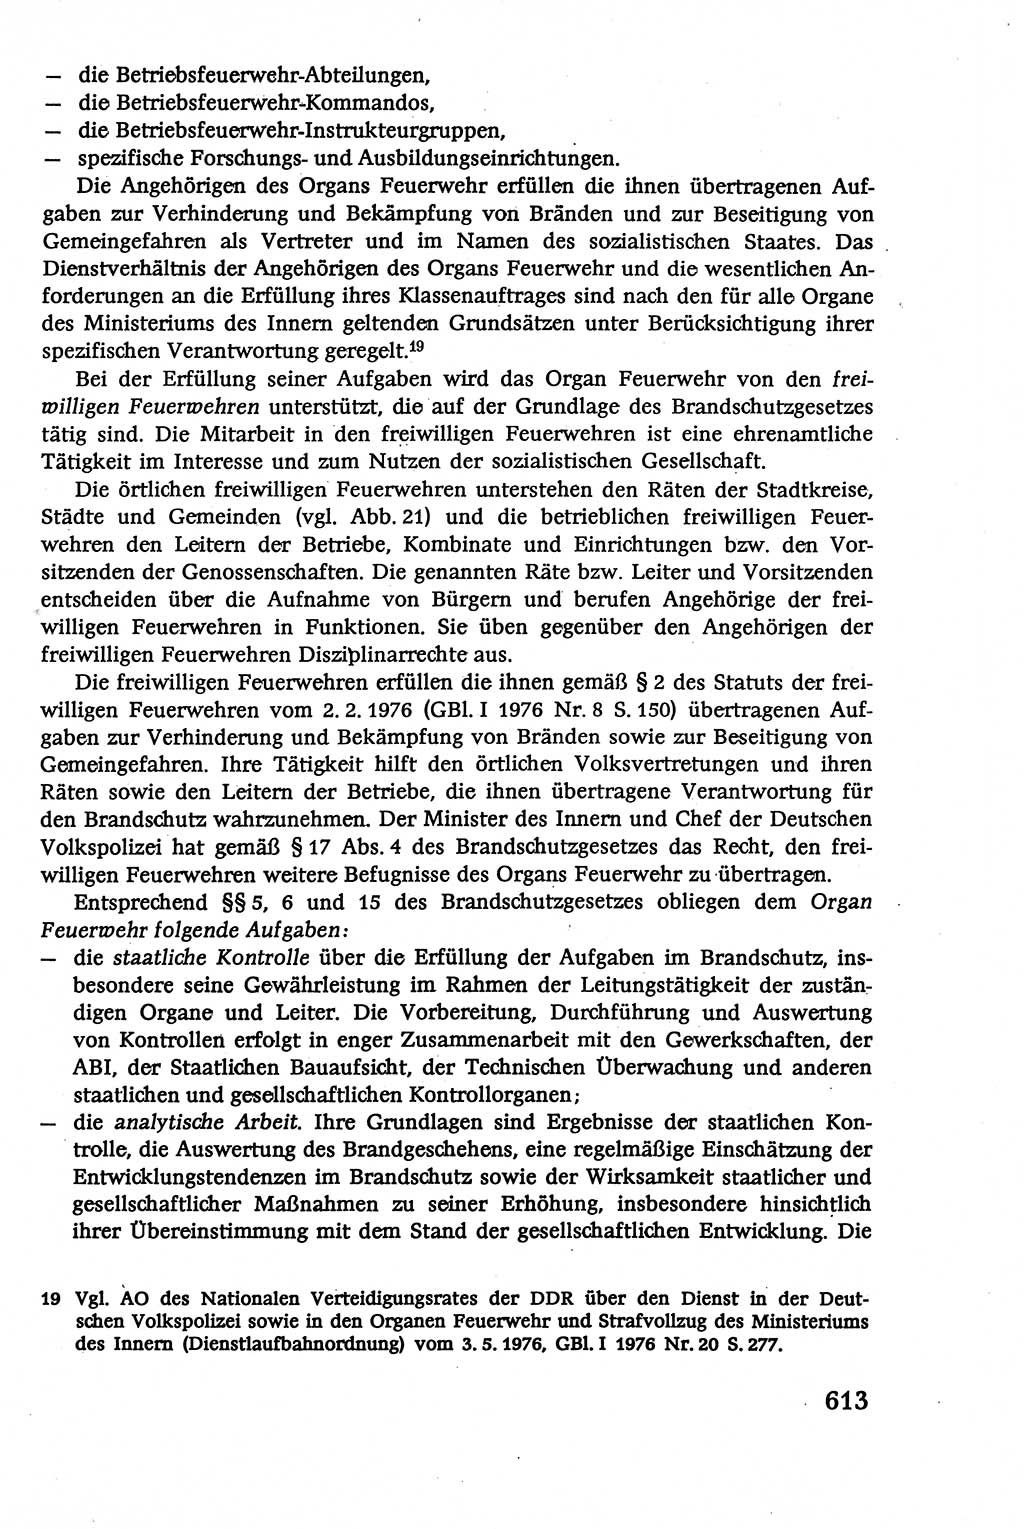 Verwaltungsrecht [Deutsche Demokratische Republik (DDR)], Lehrbuch 1979, Seite 613 (Verw.-R. DDR Lb. 1979, S. 613)